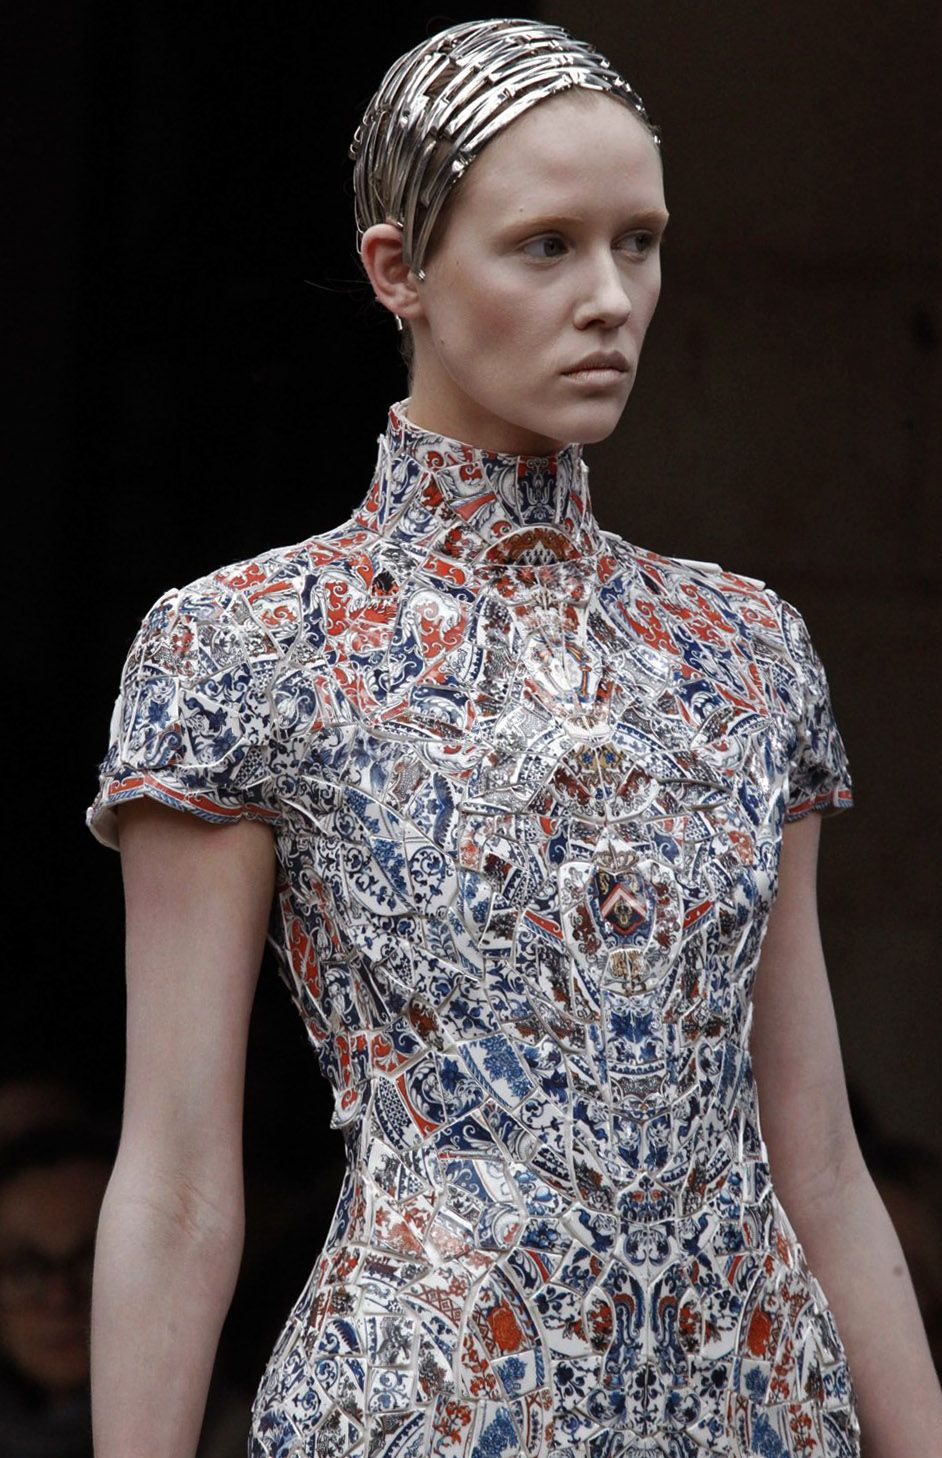 The Porcelain Dress By Fashion Designer Li Xiaofeng ⋆ MK Fashion Style